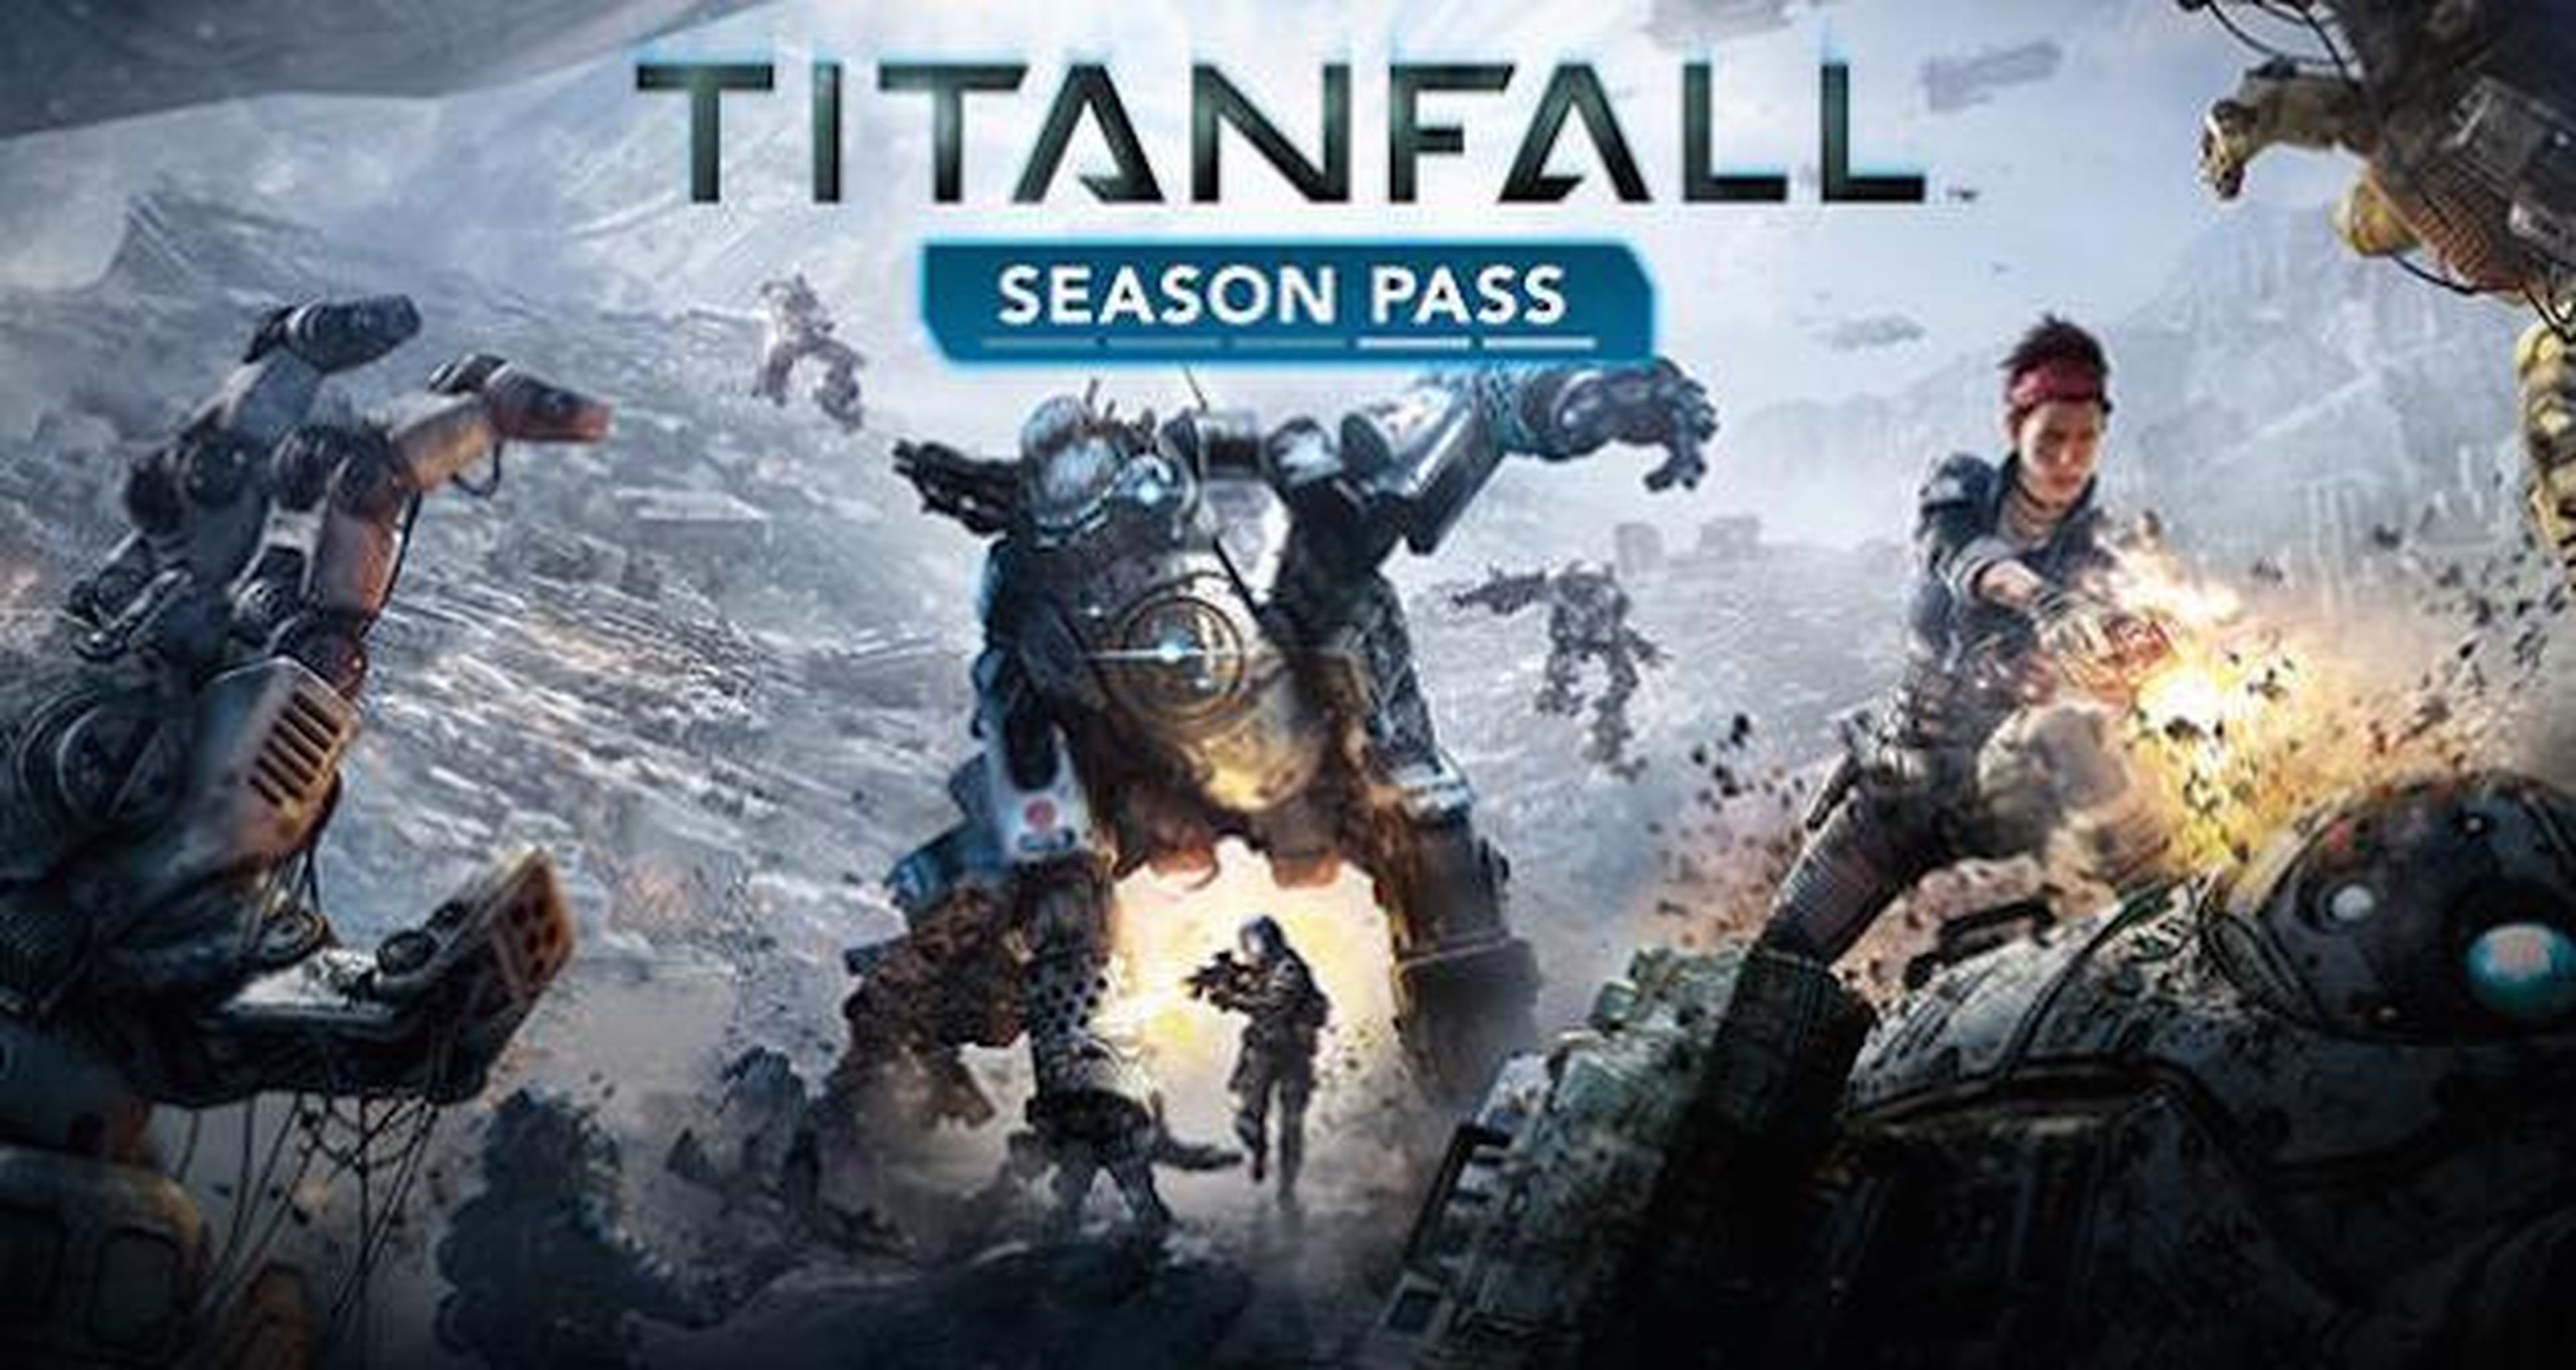 Titanfall regala su pase de temporada en Xbox One, Xbox 360 y PC